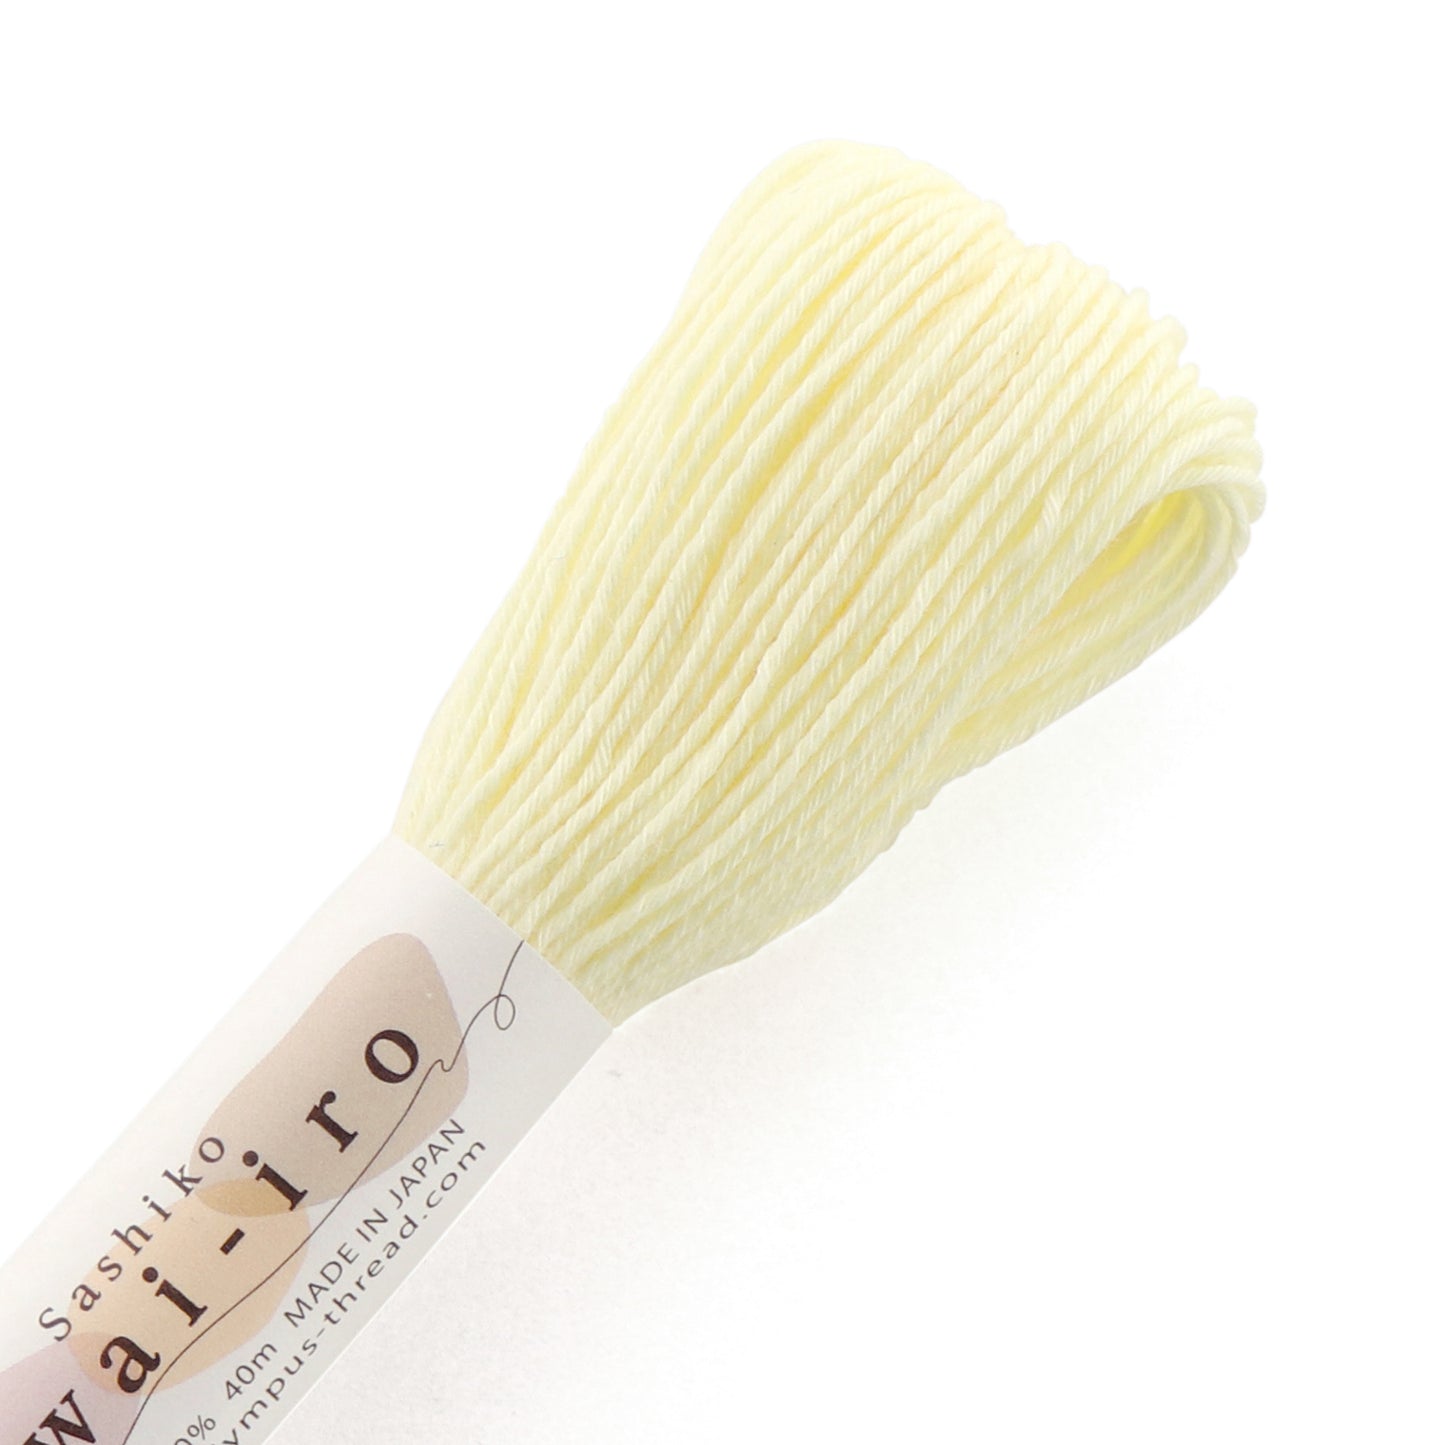 Olympus Sashiko Thread 40m Skein - Awai-Iro (Pastels)